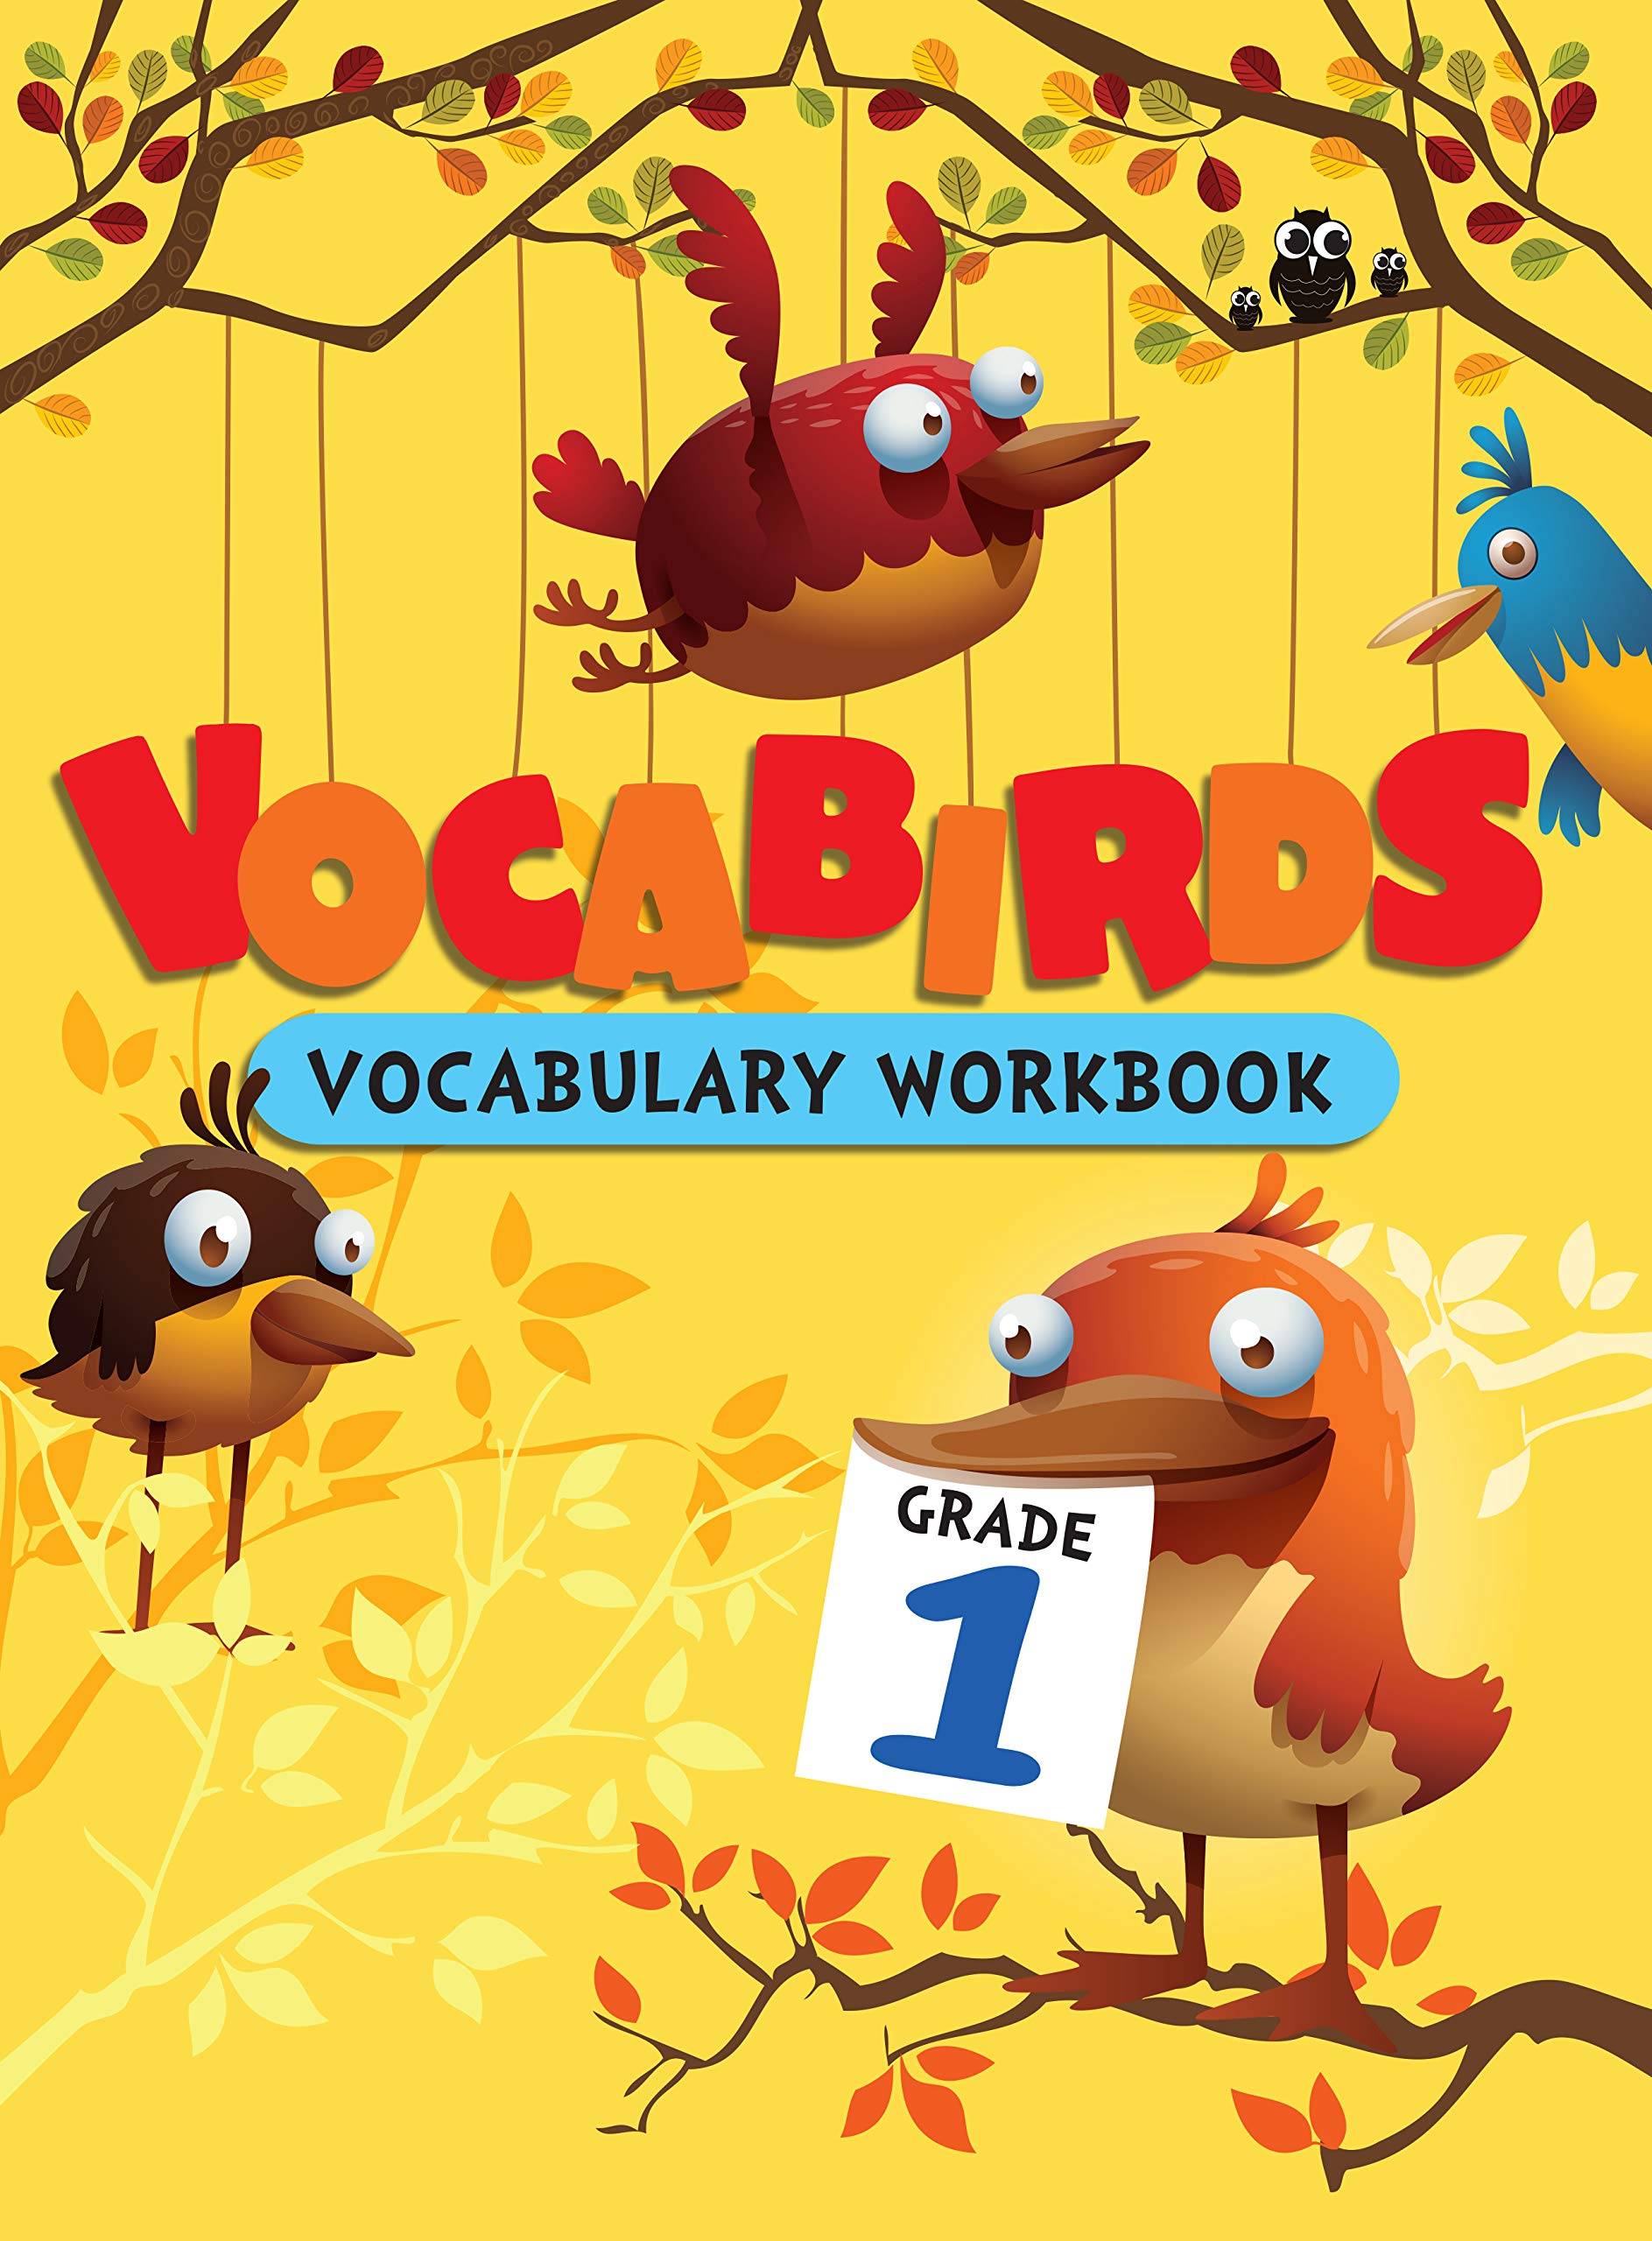 Vocabirds Vocabulary Activity Workbook Grade 1 (পেপারব্যাক)